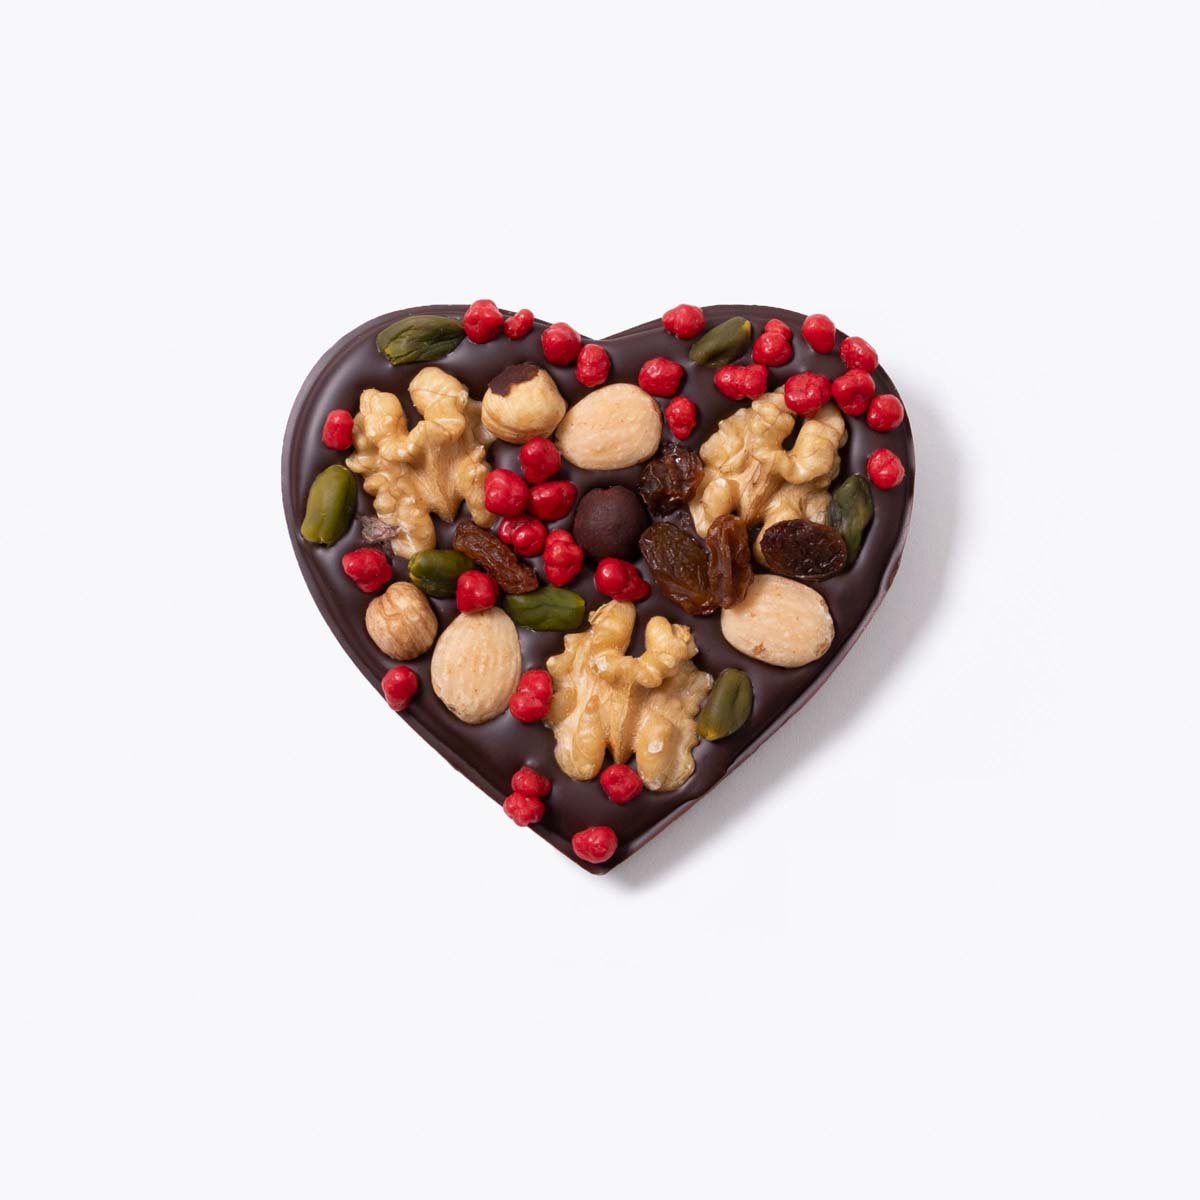 Tableta Corazón - San Valentín - Bombonería Pons - Tabletas decorada